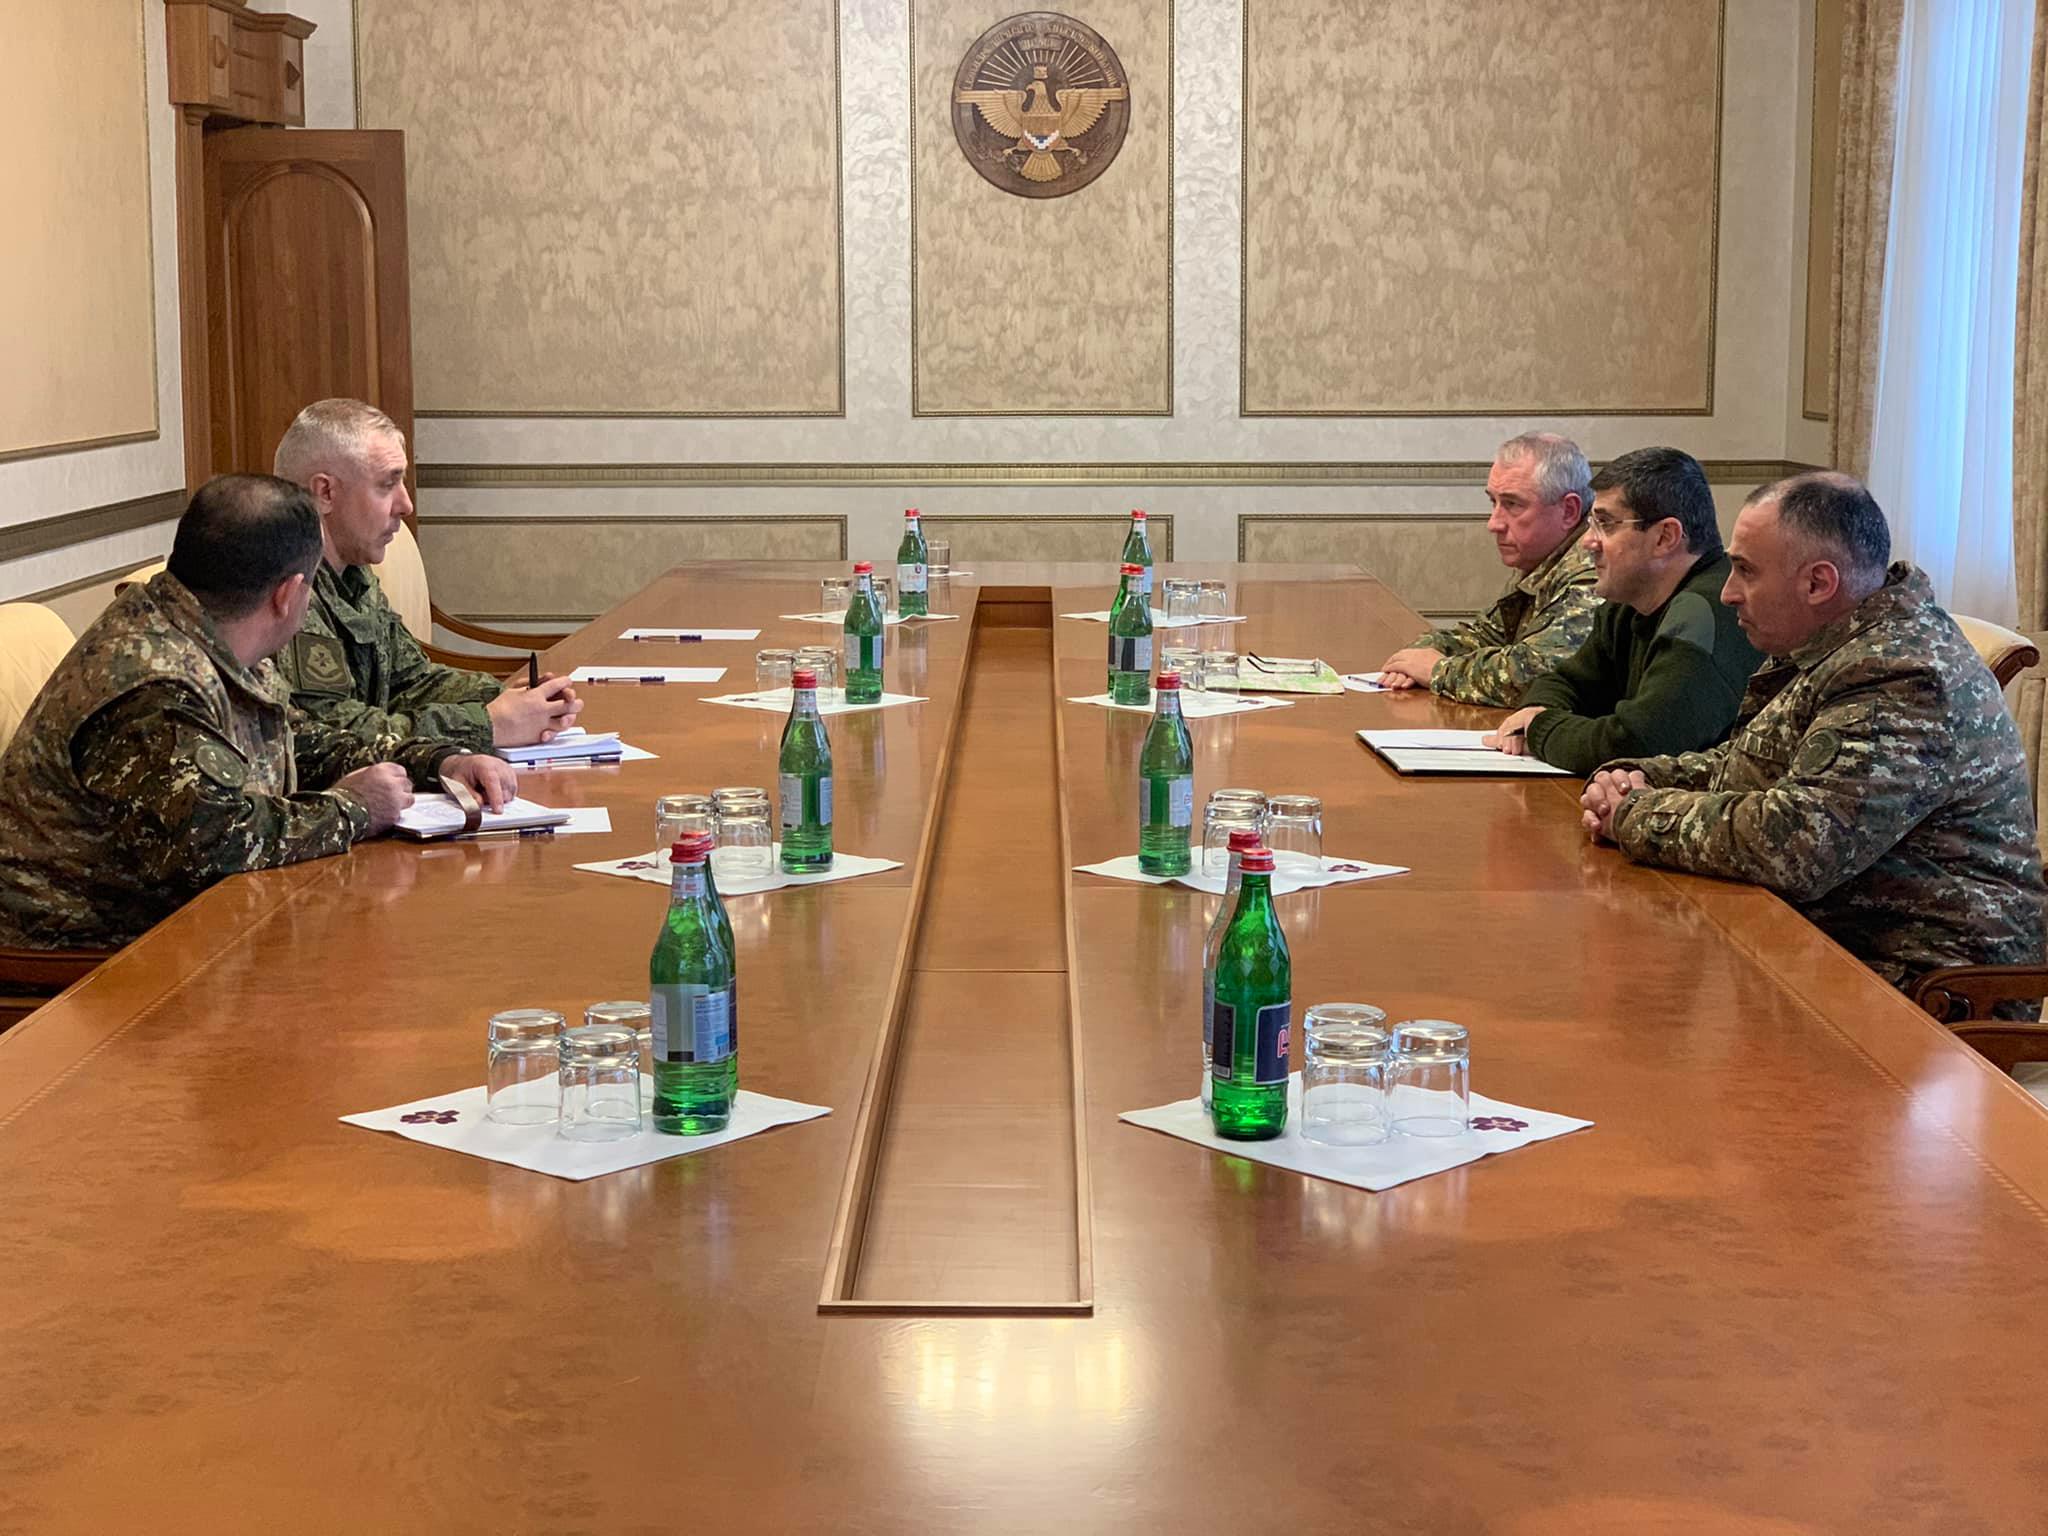 Արցախի նախագահն ընդունել է ՌԴ խաղաղապահ զորակազմի հրամանատար, գեներալ-լեյտենանտ Ռուստամ Մուրադովին